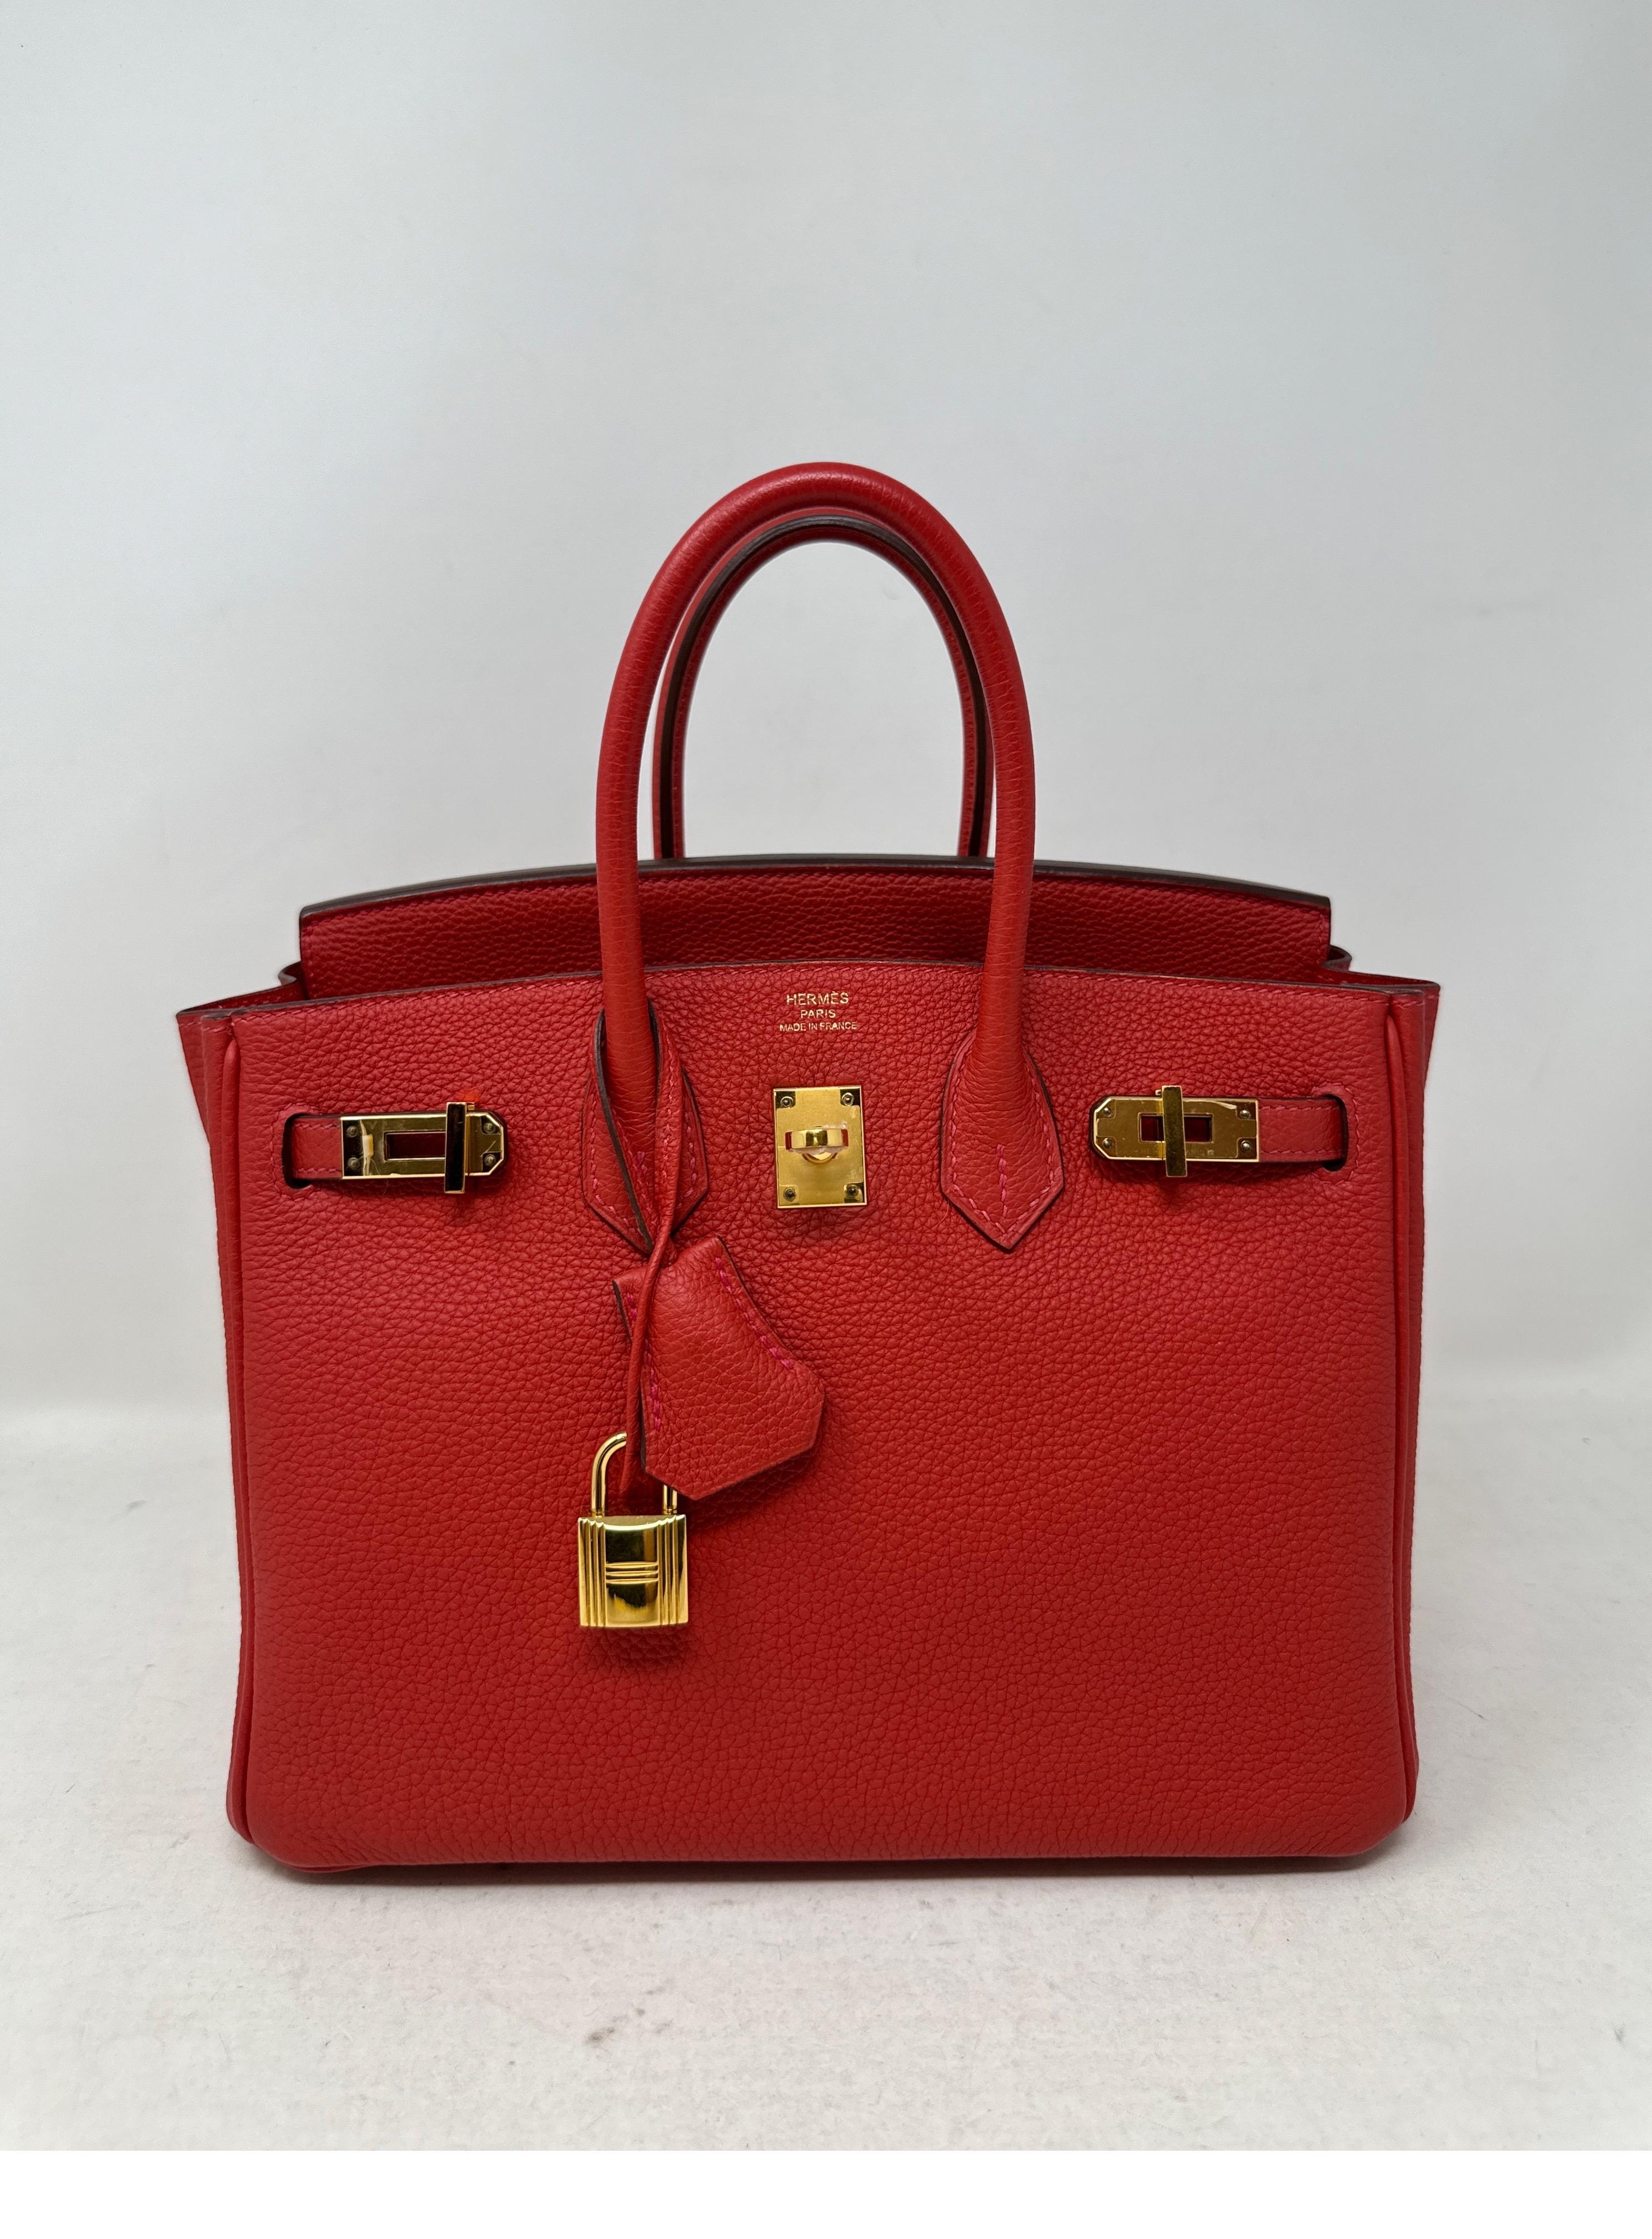 Hermes Rouge Pivoine Birkin 25 Tasche. Schöne rote Farbe mit goldener Hardware. Leder aus Togo. Sieht aus wie neu. Ausgezeichneter Zustand. Das wäre ein perfektes Geschenk. Das Interieur ist neuwertig. Die Hardware ist noch aus Plastik. Das